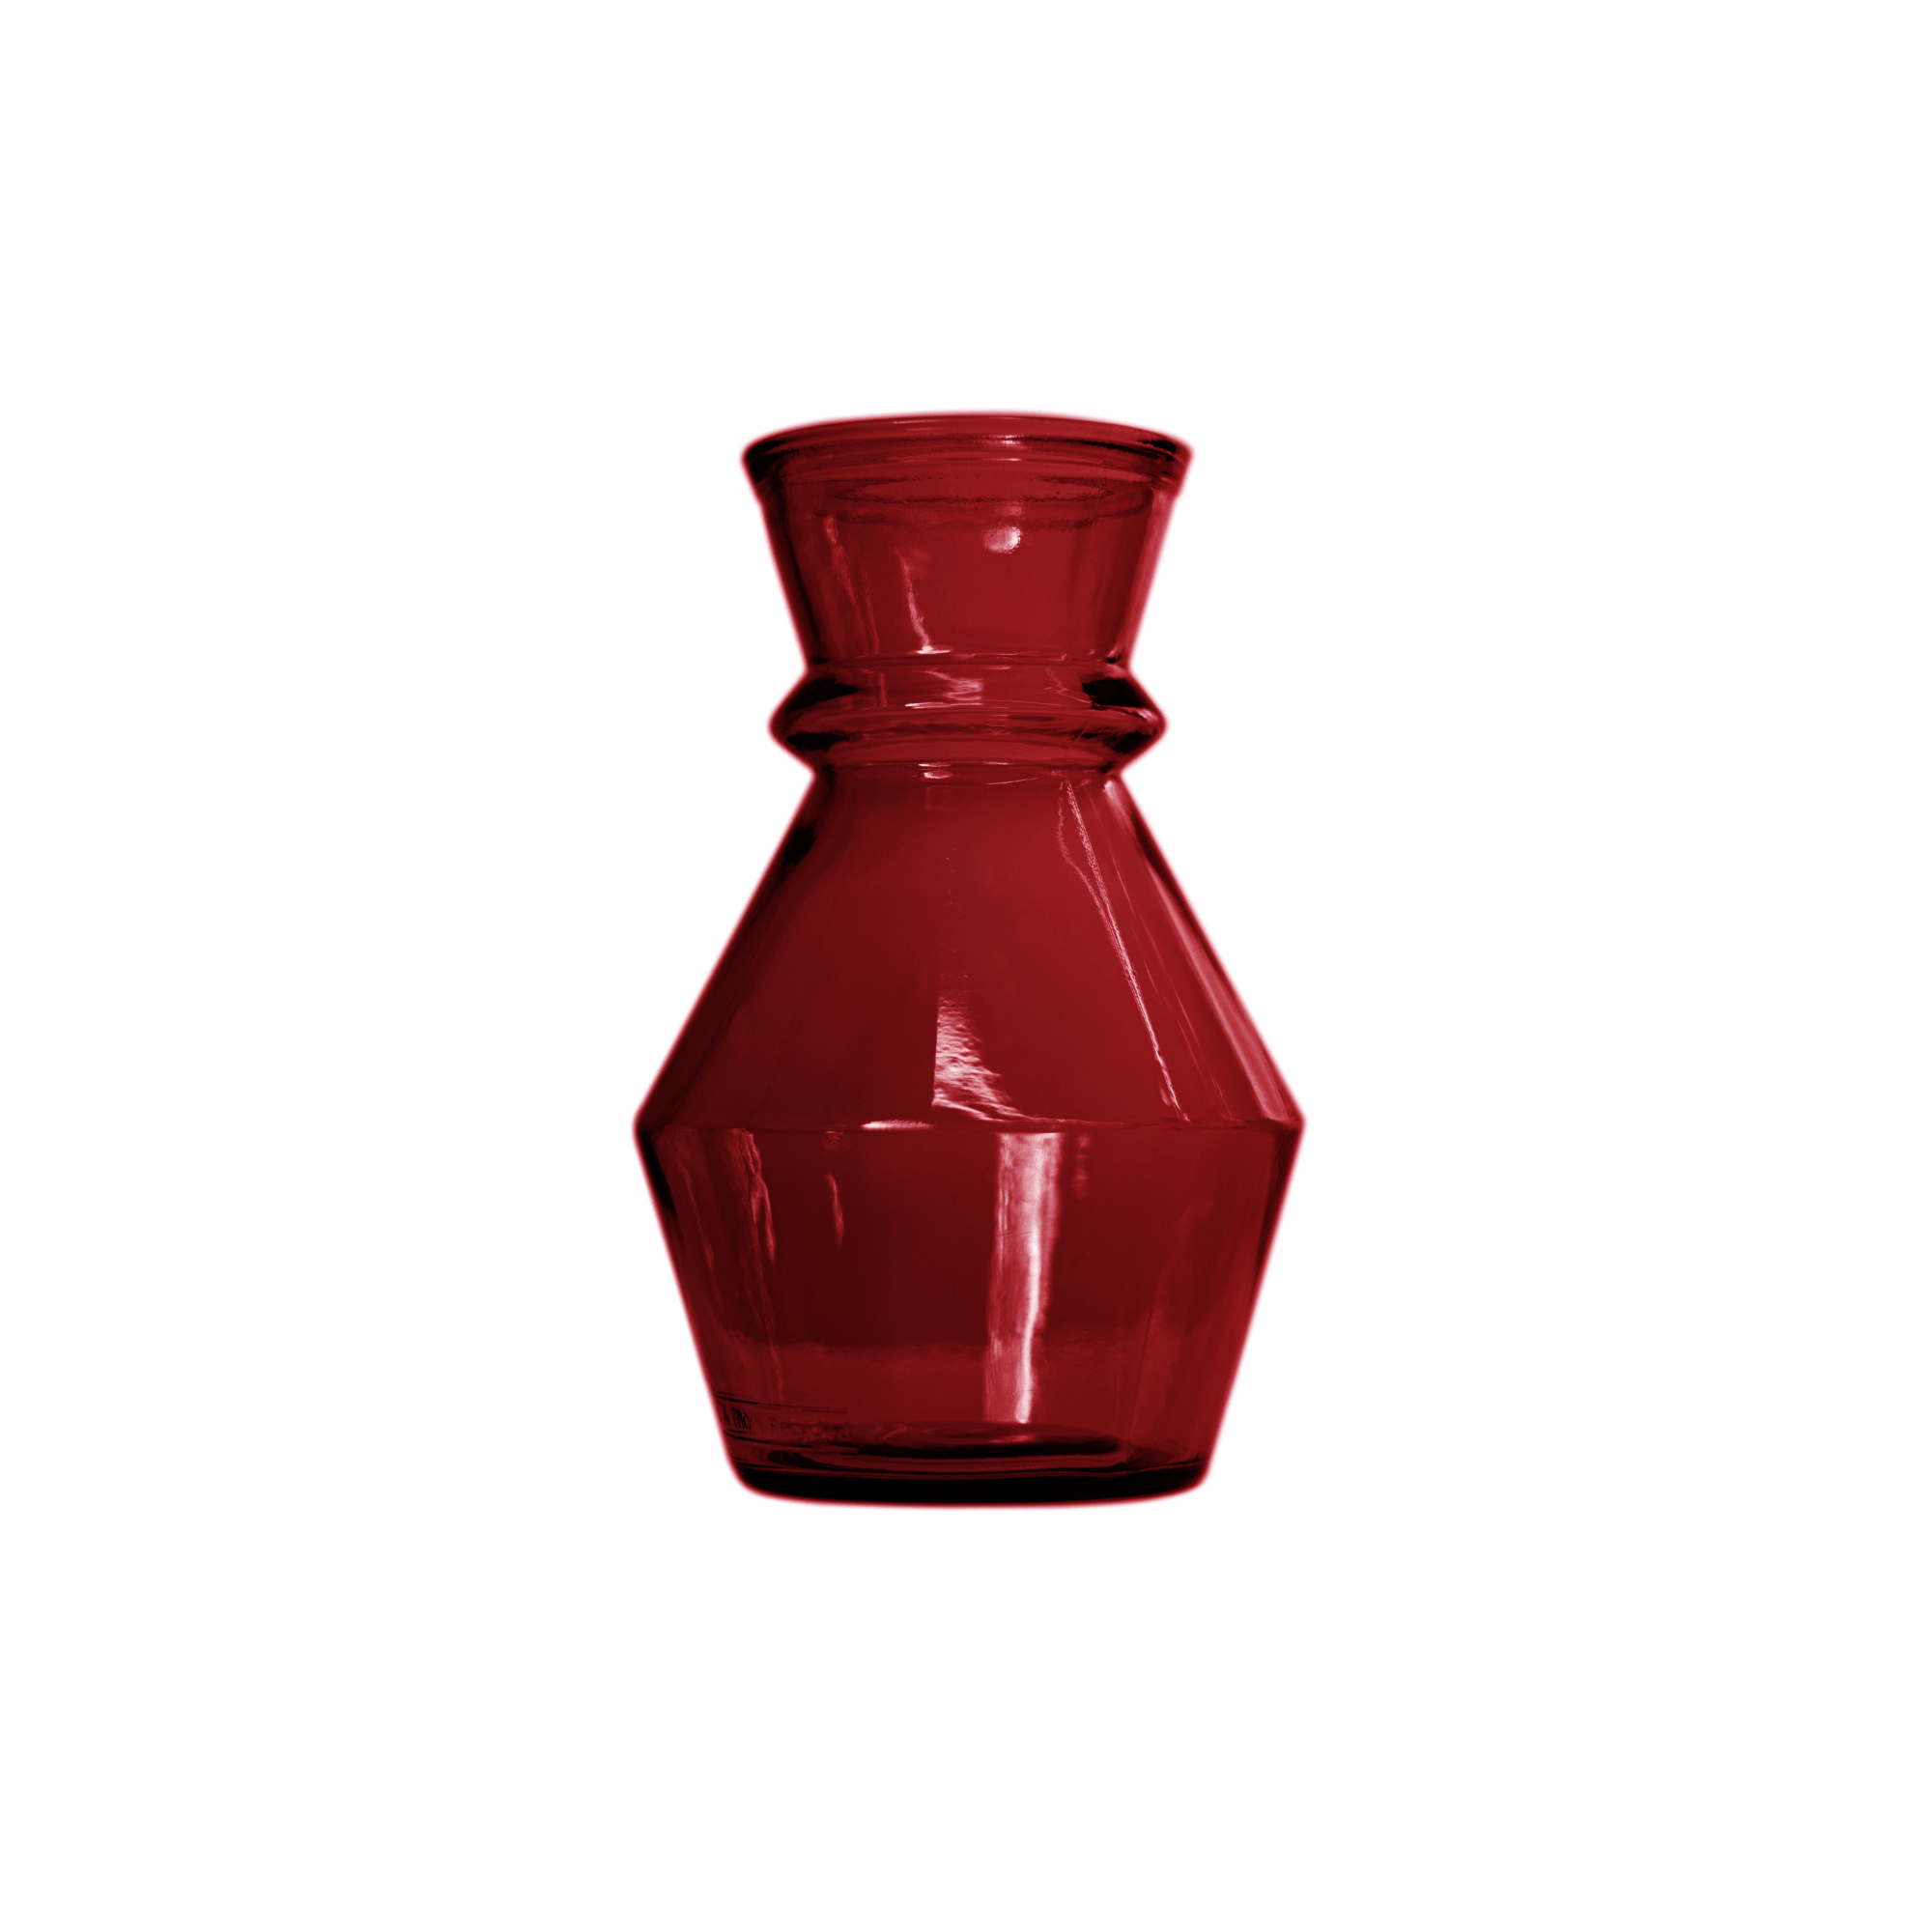 Ваза San miguel Merida рубиновый 25 см ваза san miguel merida темно коричневый 25 см